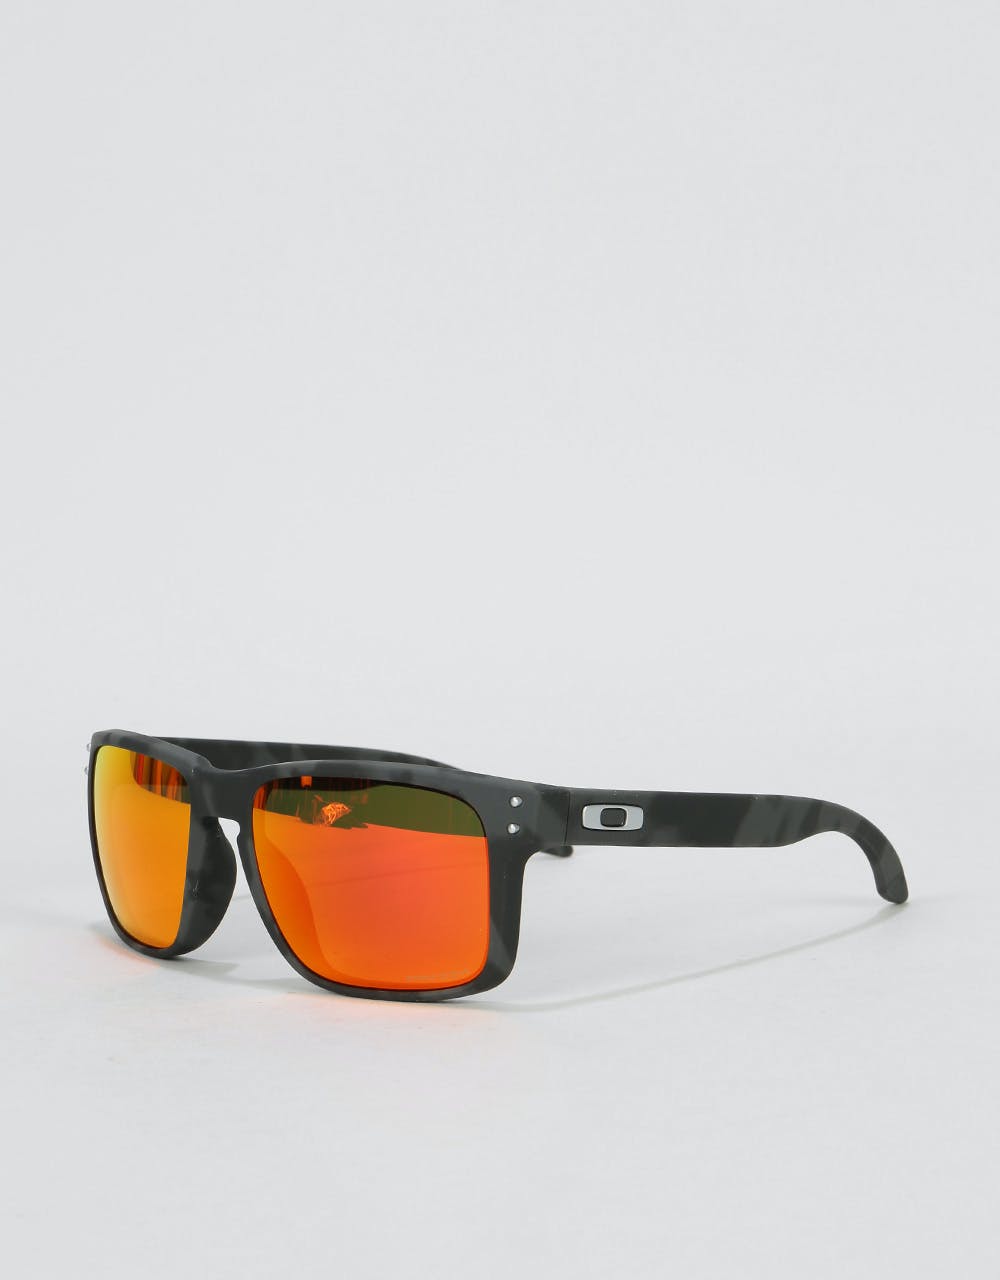 Oakley Holbrook Sunglasses - Black Camo (Prizm Ruby Lens)